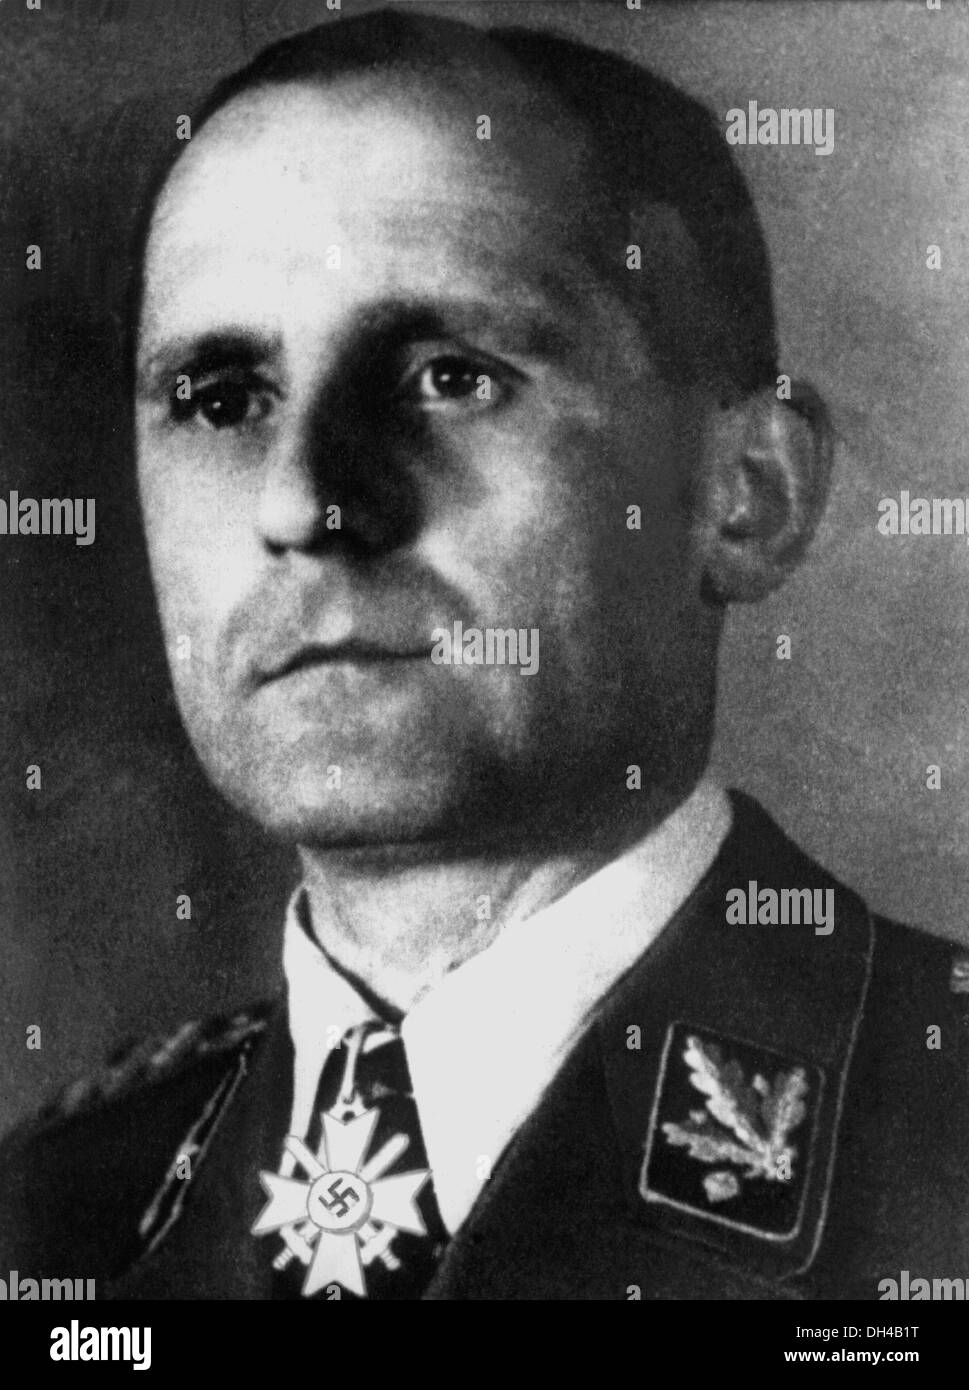 Fotografia Contemporanea di SS Obergruppenführer Heinrich Müller. Egli è stato anche il capo della Gestapo, il segreto della polizia di stato durante il Terzo Reich. Foto Stock